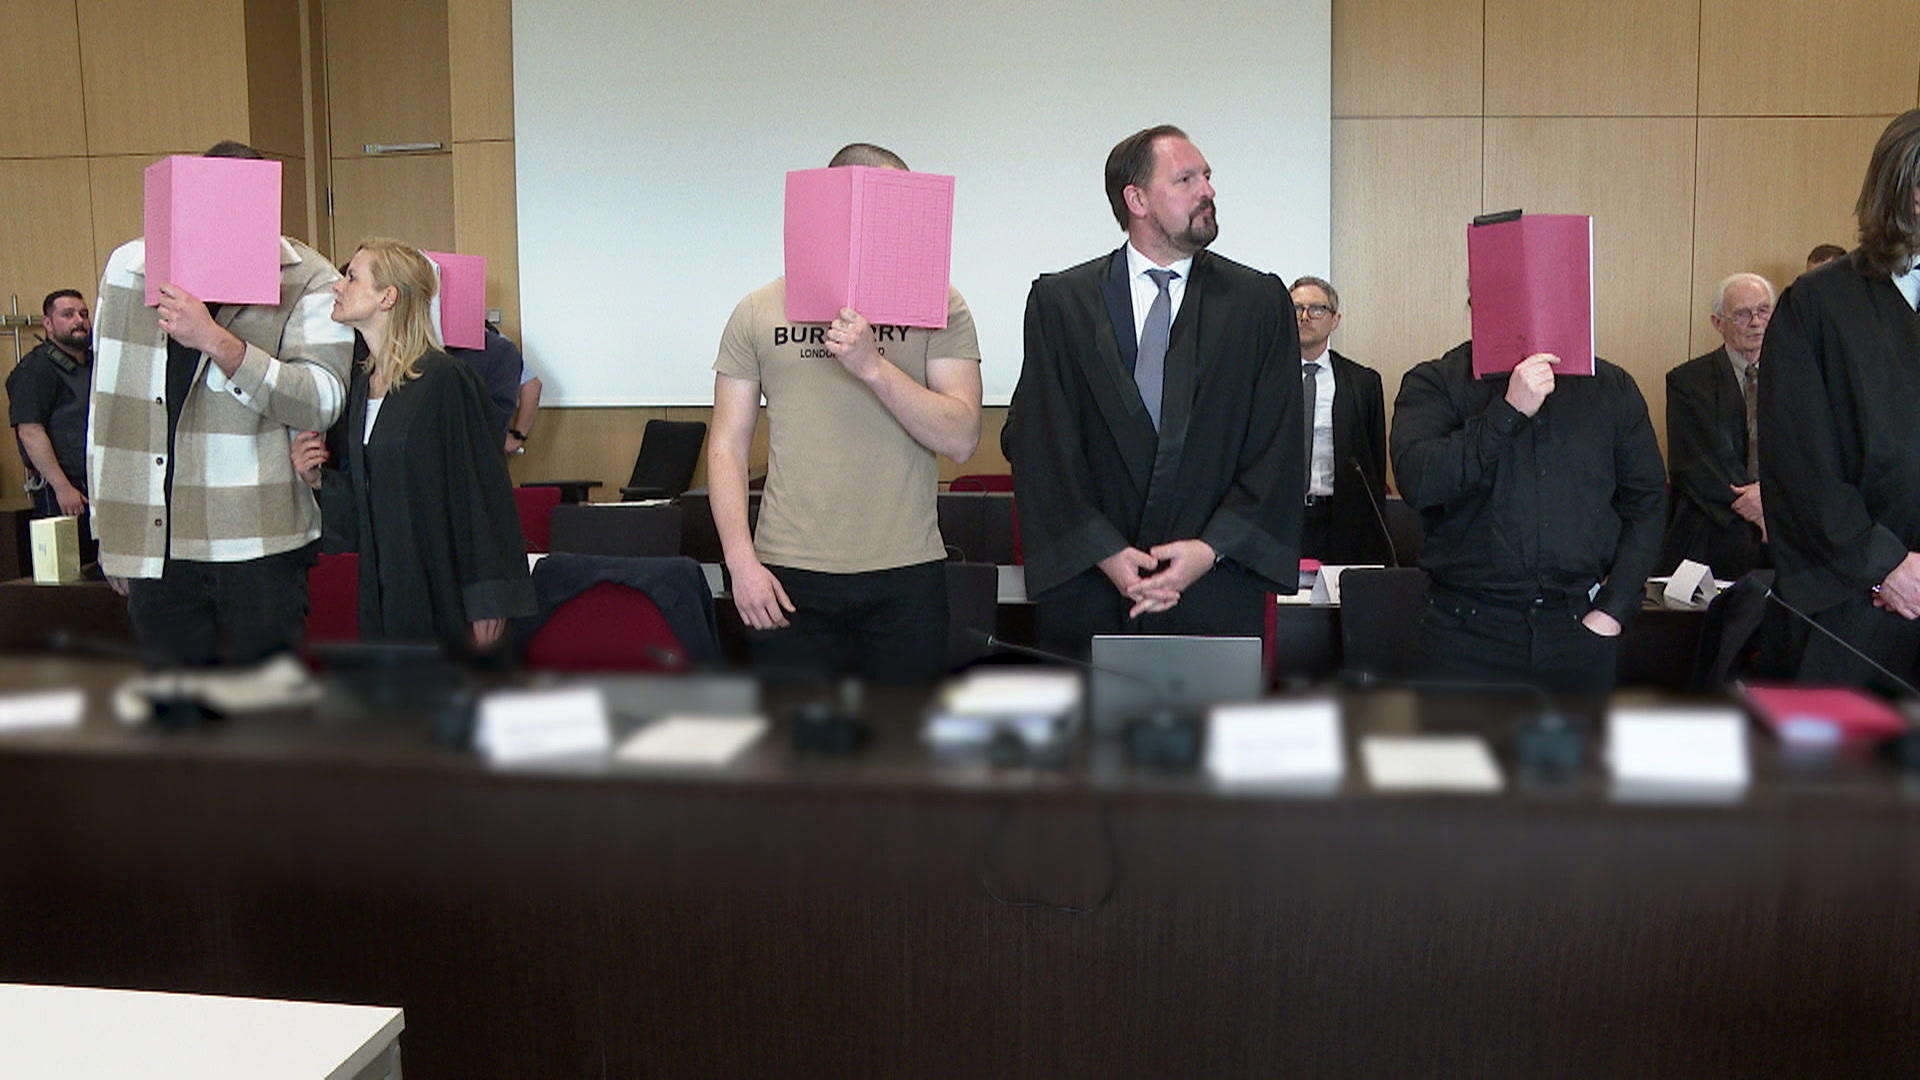 Zwei Handwerker erlitten während des Prozesses in Mönchengladbach stundenlange Folter und Märtyrertum